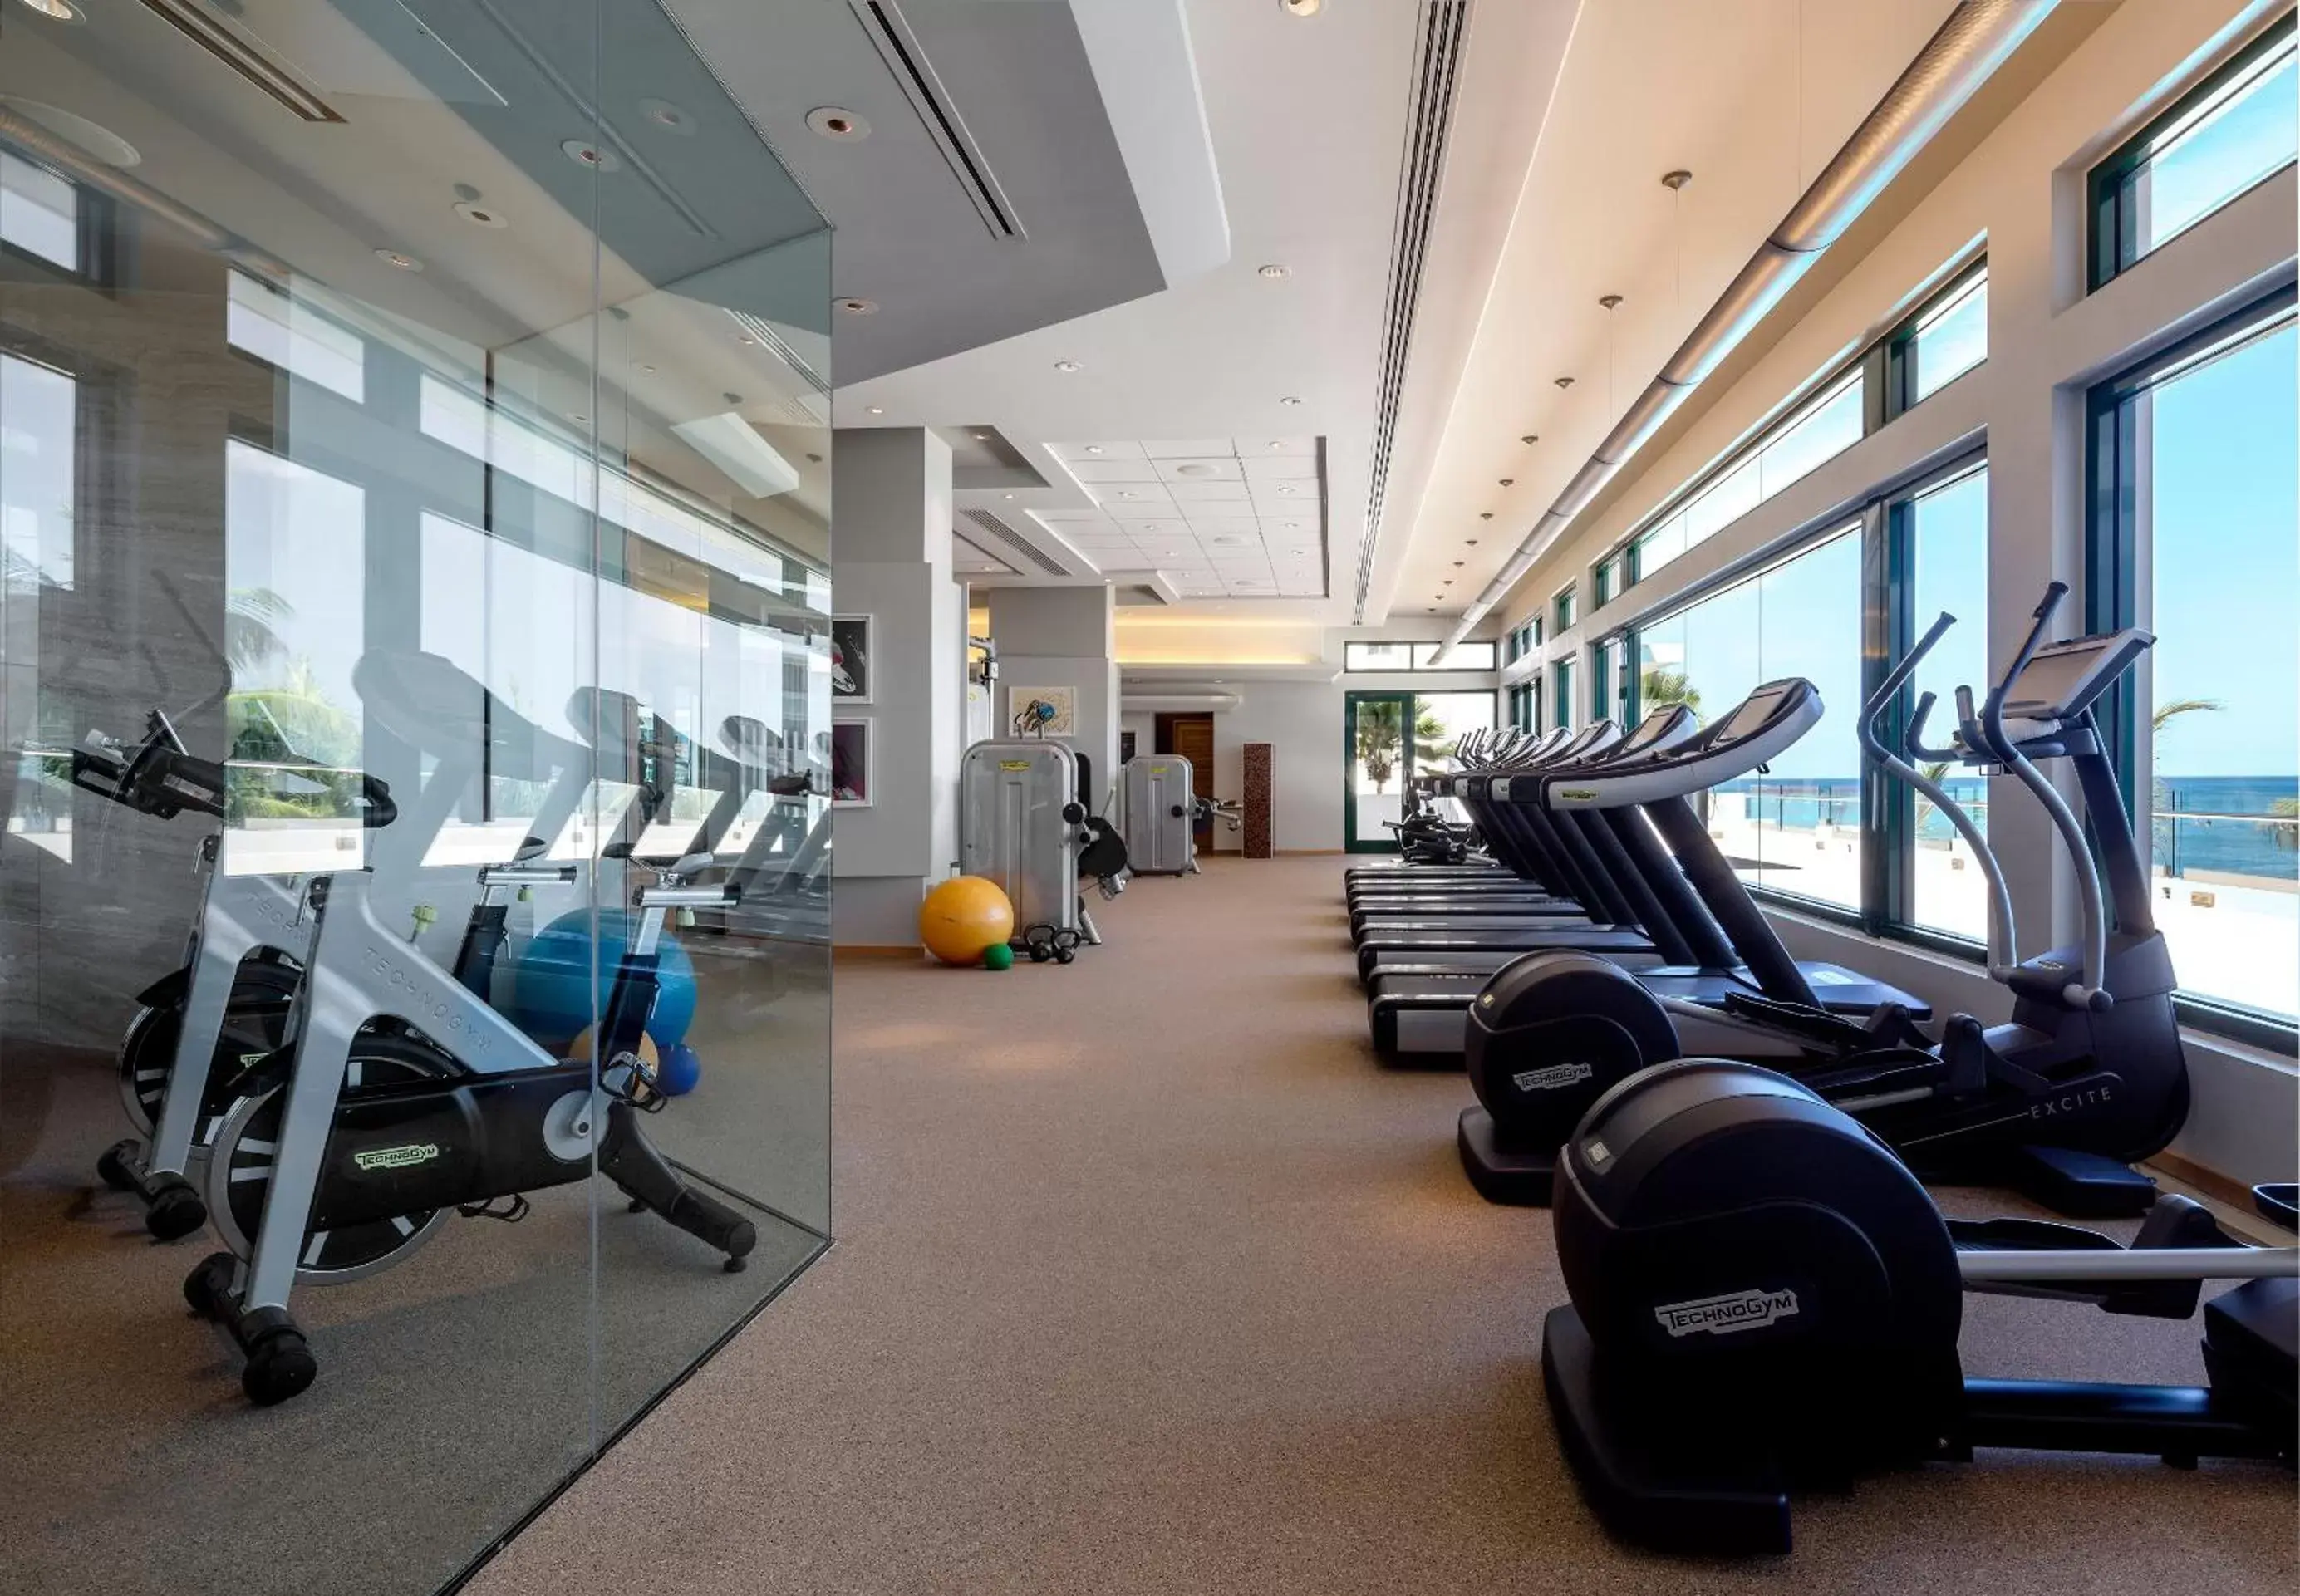 Fitness centre/facilities, Fitness Center/Facilities in Condado Vanderbilt Hotel